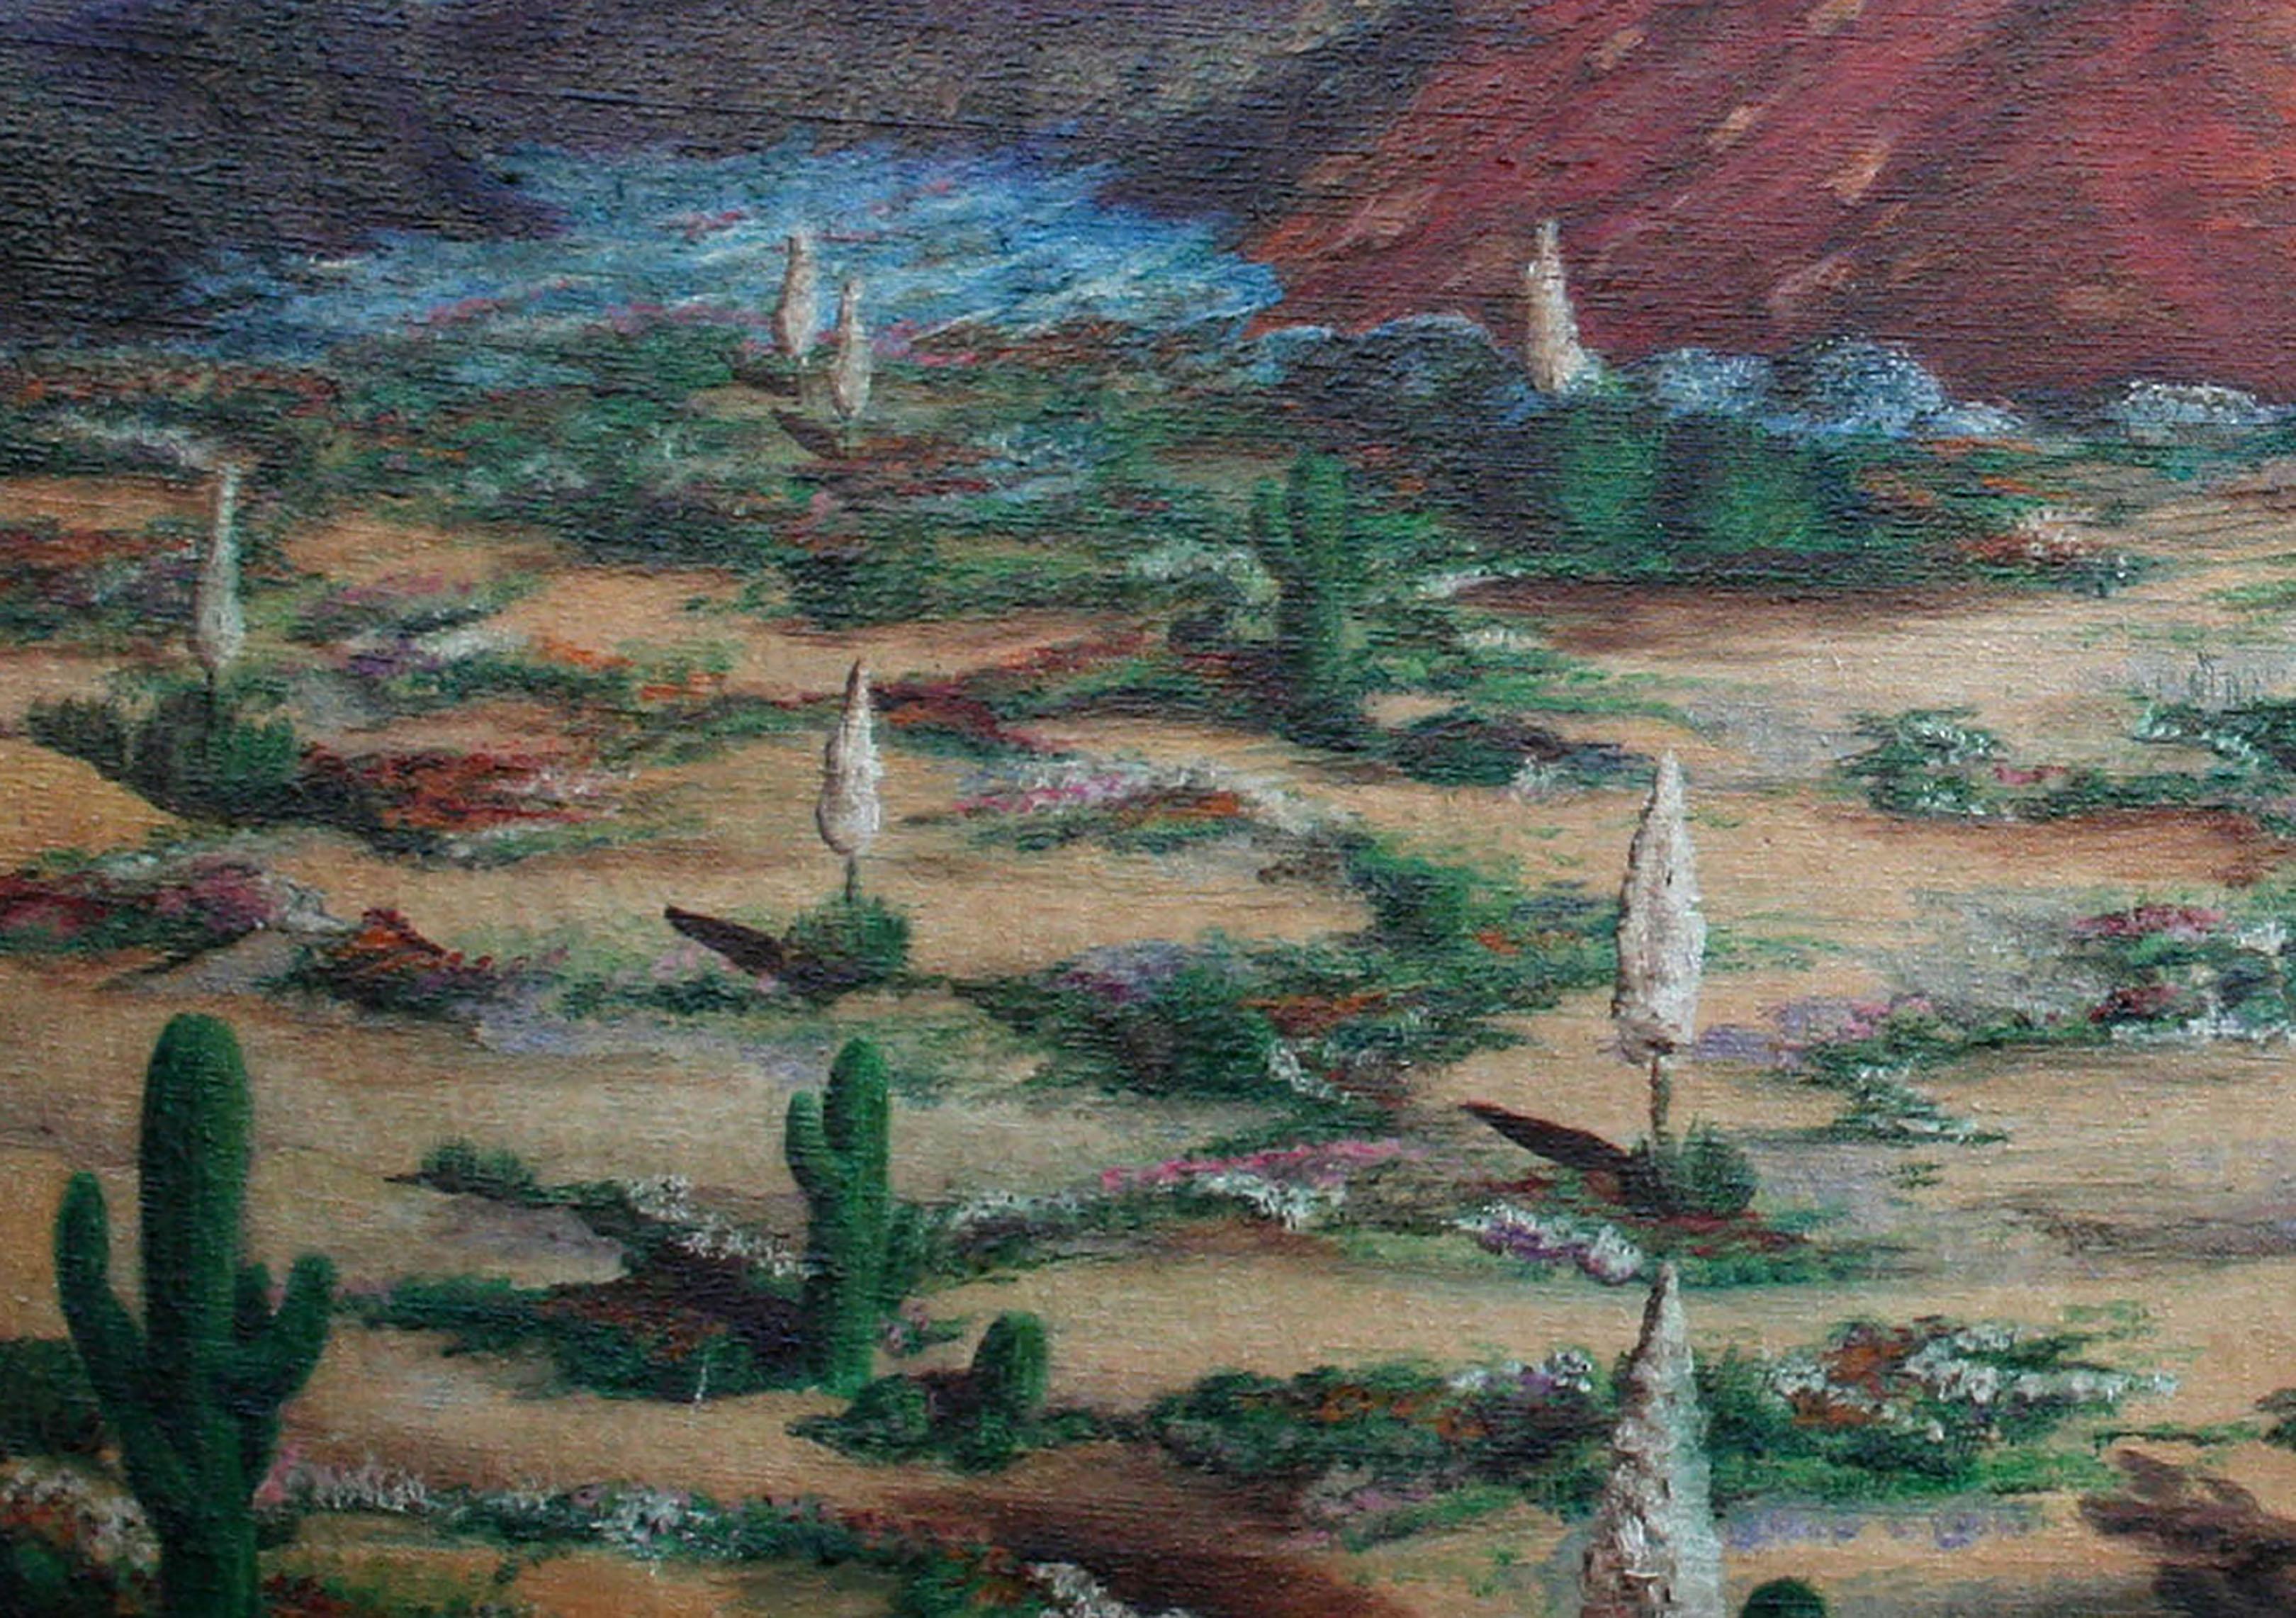 Paysage du désert du Sud-Ouest du milieu du siècle dernier, huile sur toile

Vaste paysage en plein air du Sud-Ouest représentant une scène désertique avec des montagnes, des cactus et d'autres plantes du désert par l'artiste californien C.I.C.